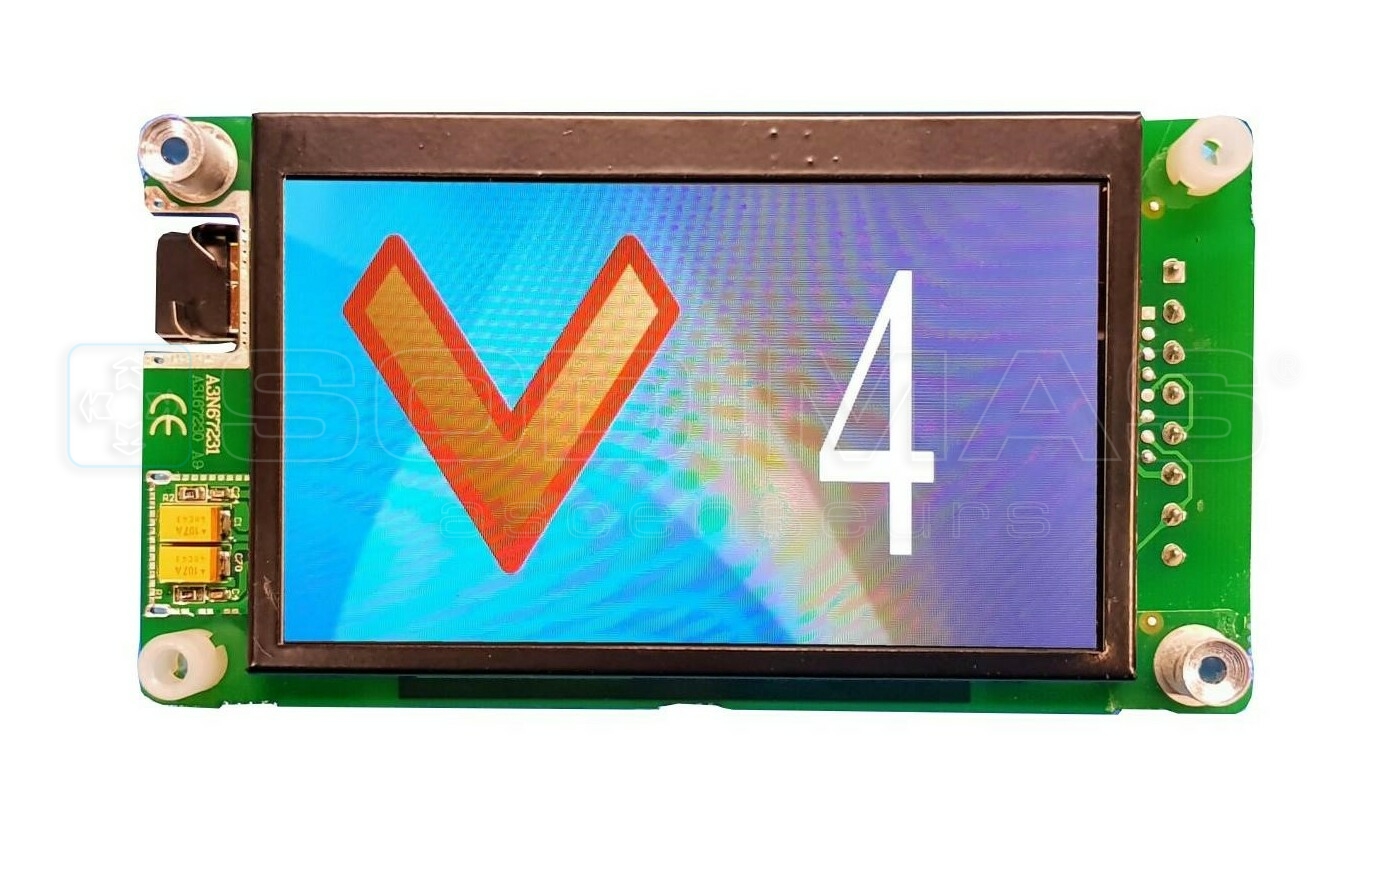 Afficheur LCD 4.3 pouces couleur CAN avec gong et synthèse vocale intégrés